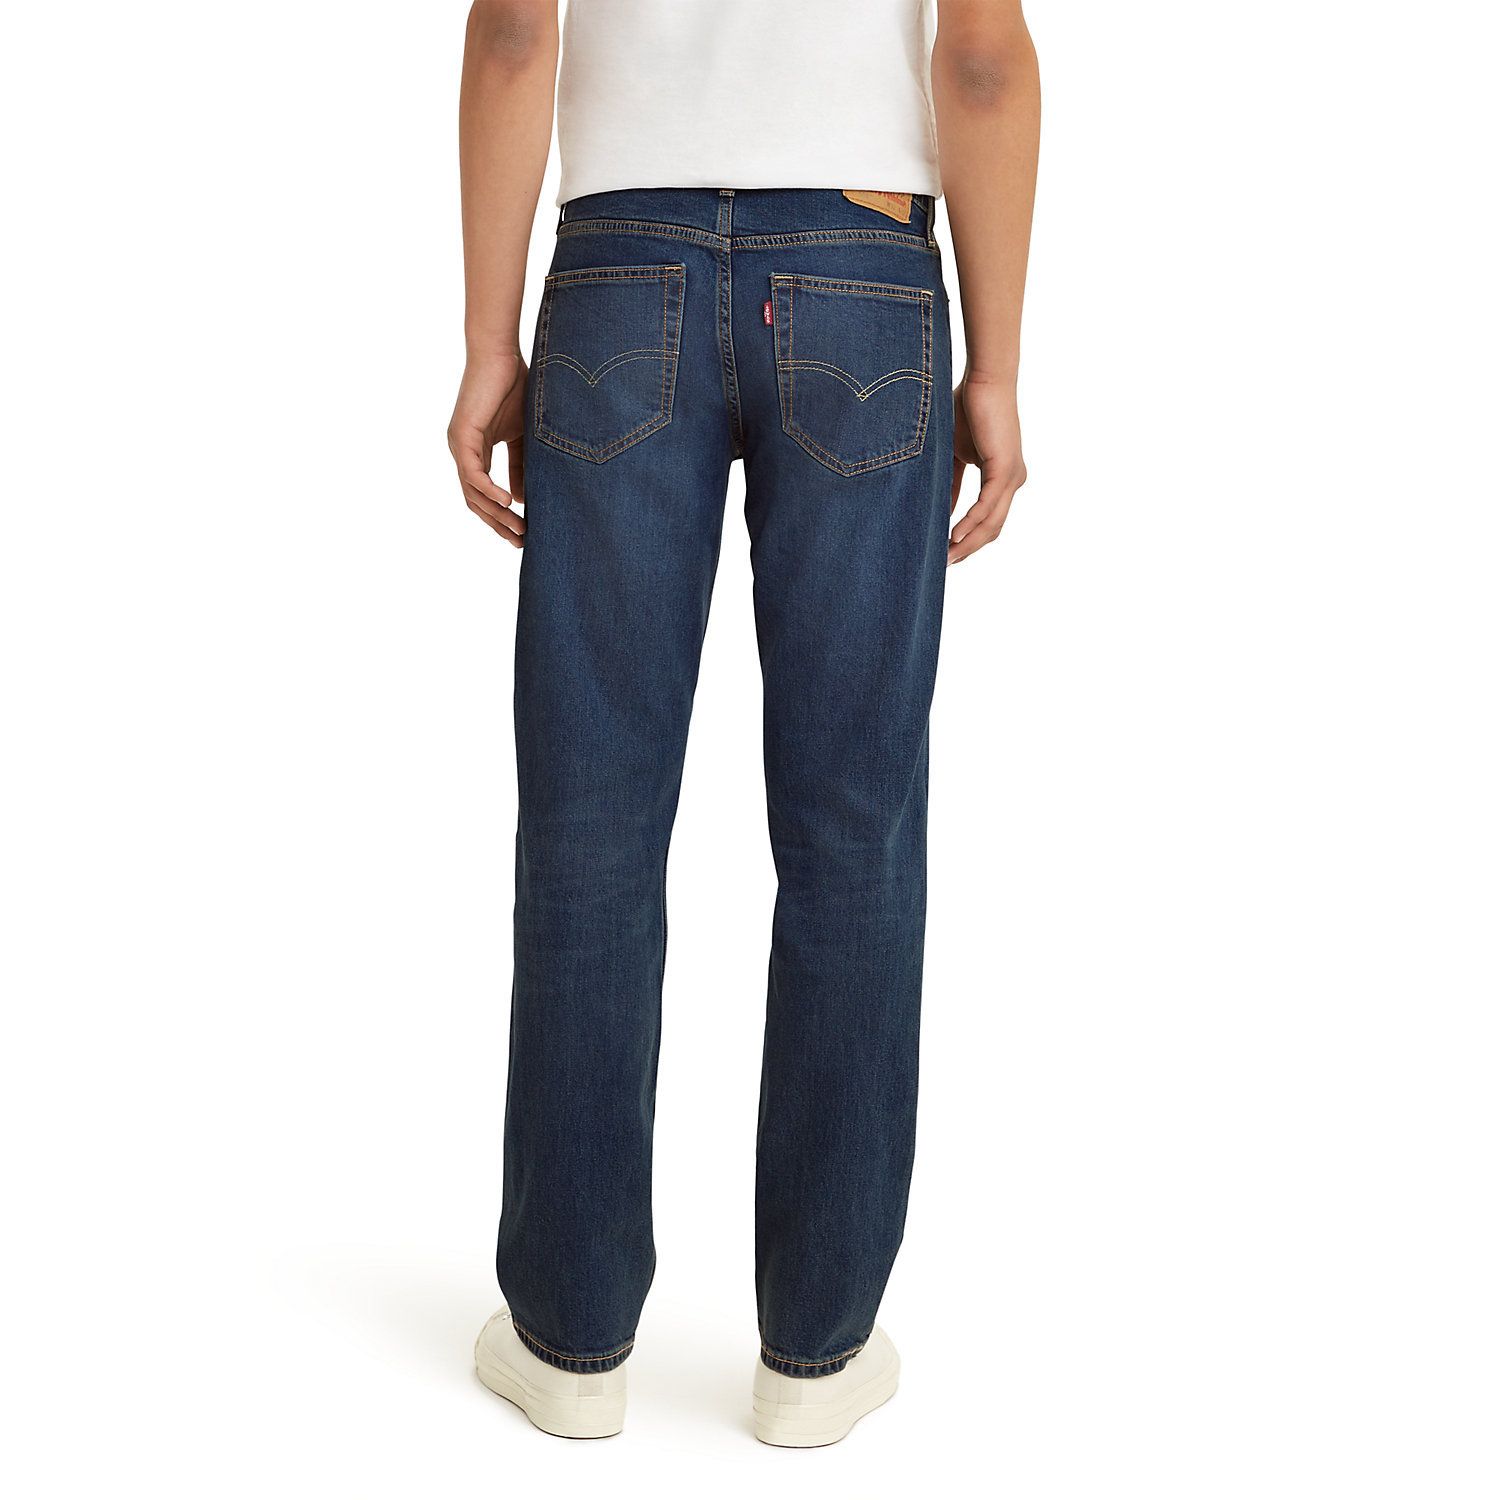 Свободные джинсы прямого кроя Big & Tall 559 Levi's steely dan steely dan aja 180 gr